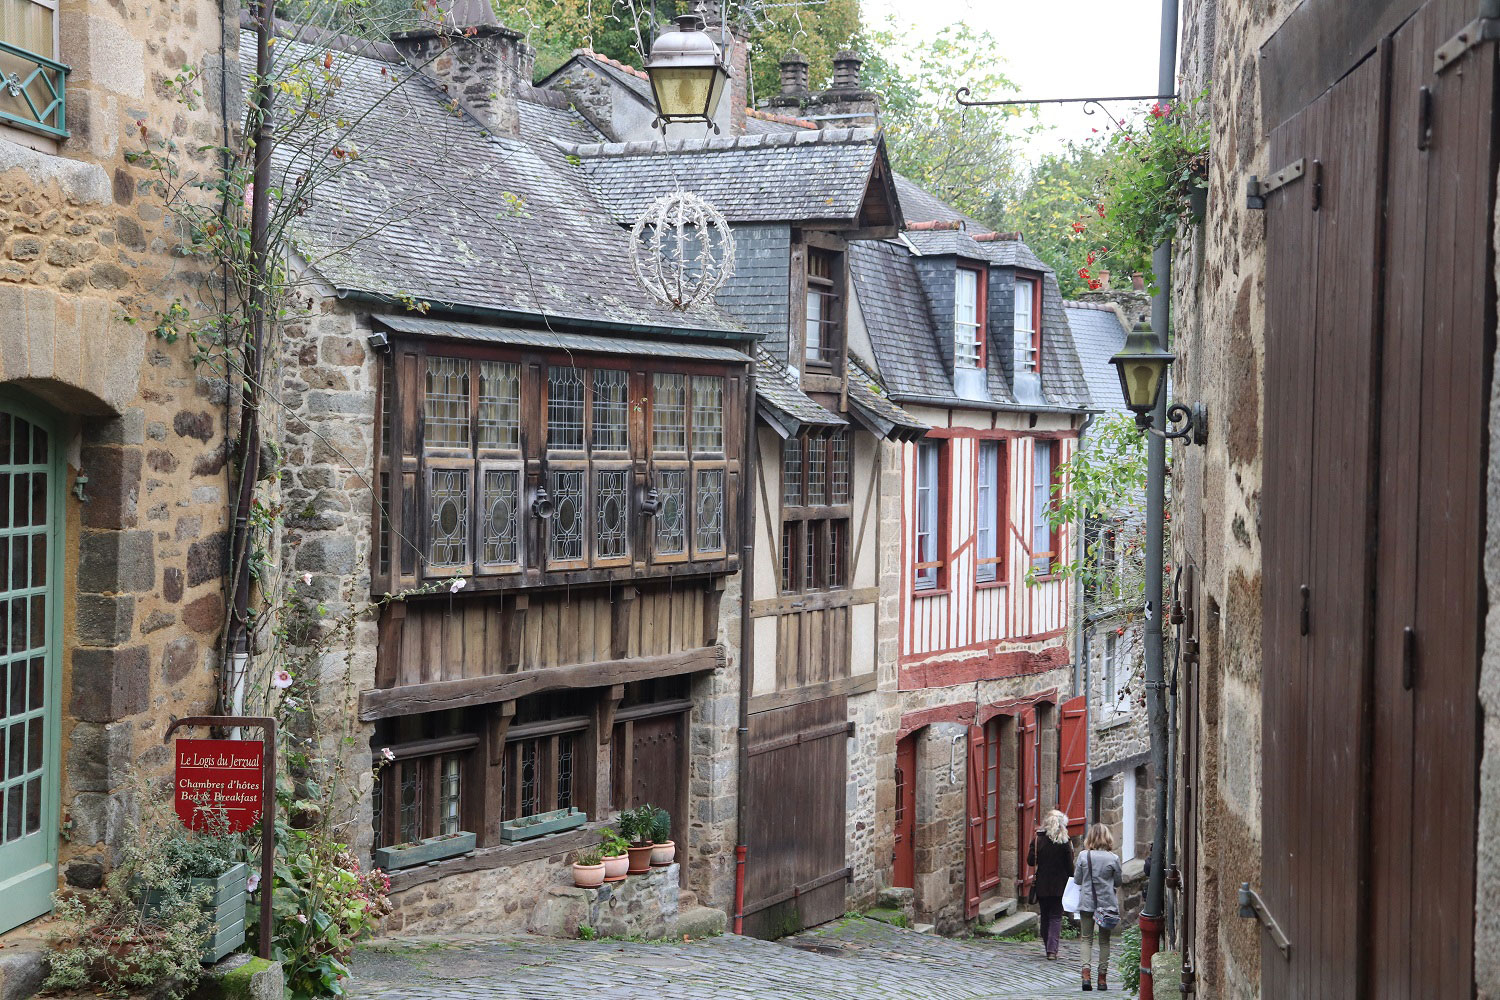 Lãng du ở làng cổ mang nét duyên dáng của nước Pháp thơ mộng - 7